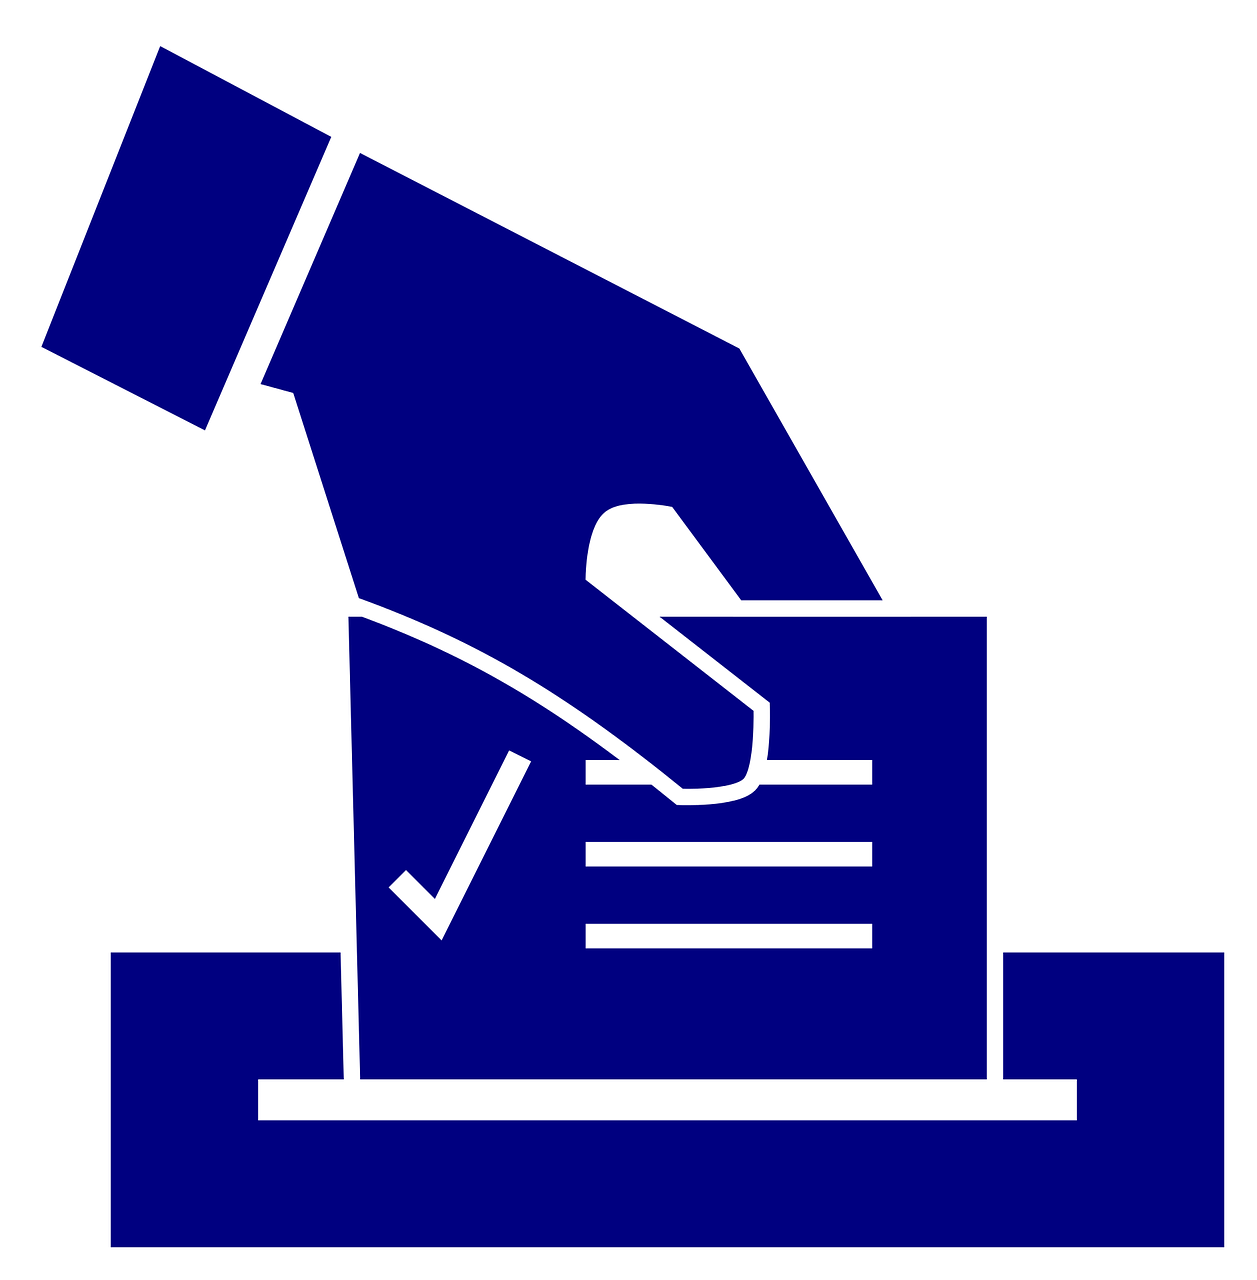 הבחירות החוזרות לראשות עיריית רעננה יתקיימו  ביום ג', 13 לנובמבר 2018